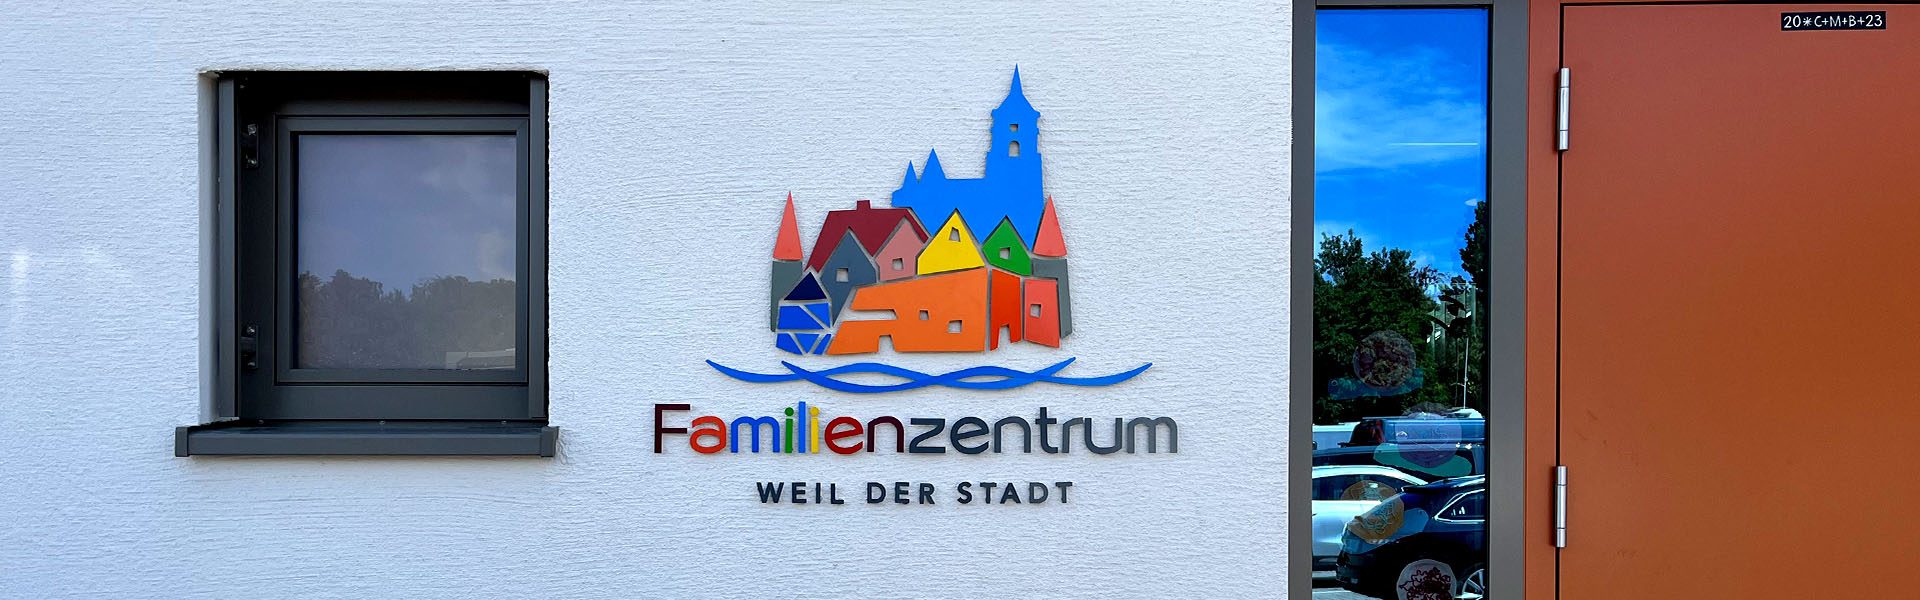 Lieferung und Montage eines 3D-Logos am Familienzentrum der katholischen Sankt Peter und Paul Gemeinde in Weil der Stadt, Frontansicht.